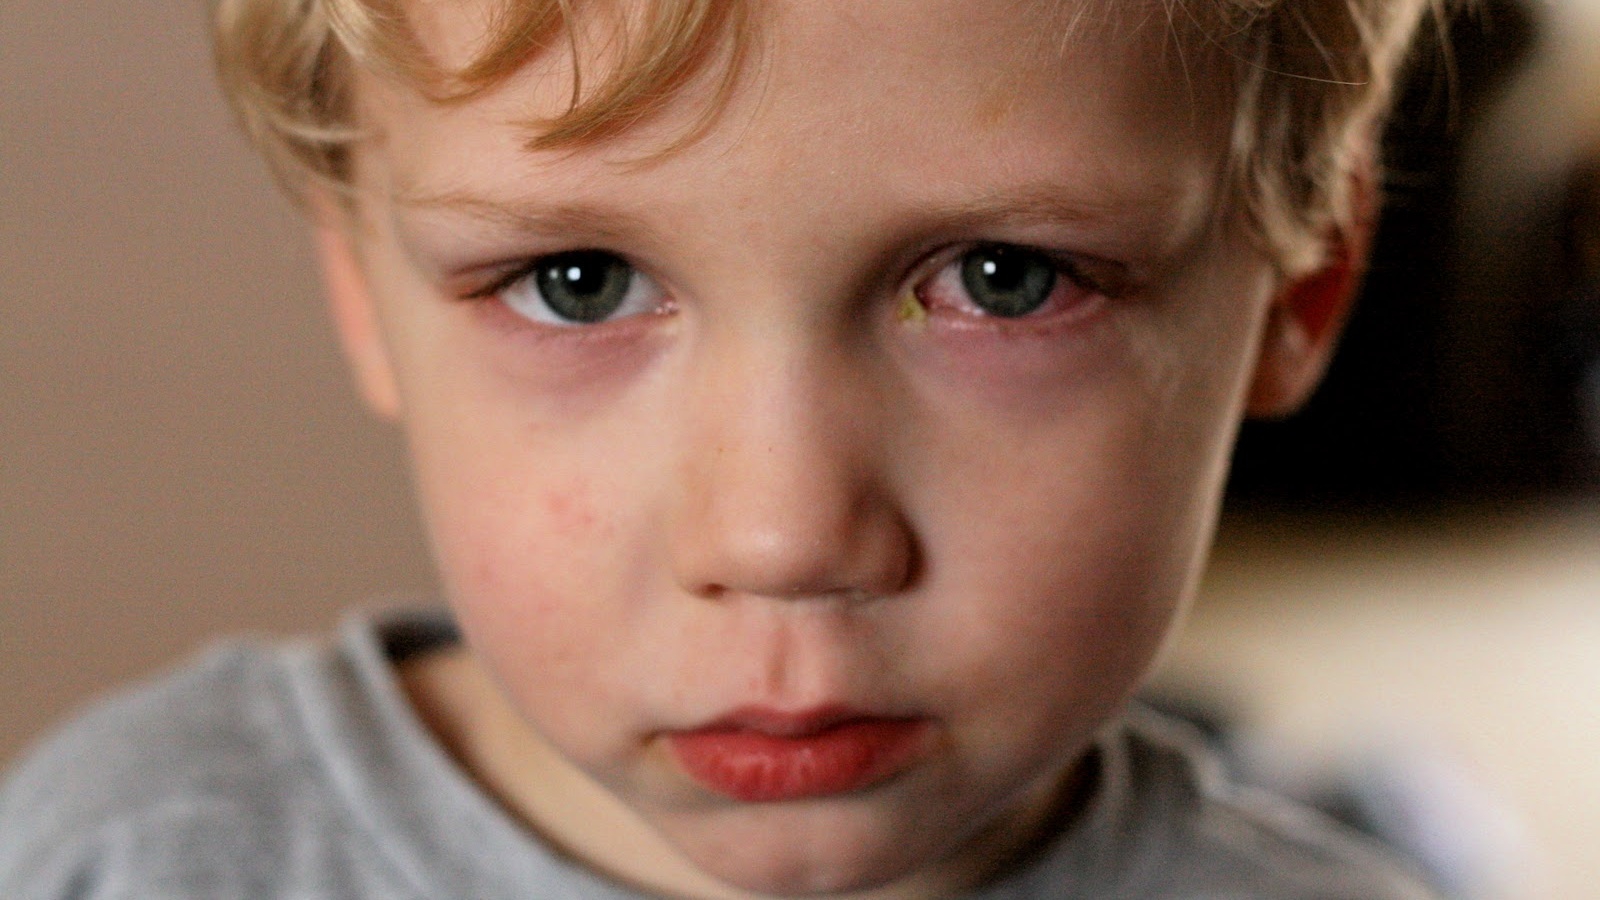 Mắt bé bị sưng đỏ mí dưới là triệu chứng của vấn đề gì?
